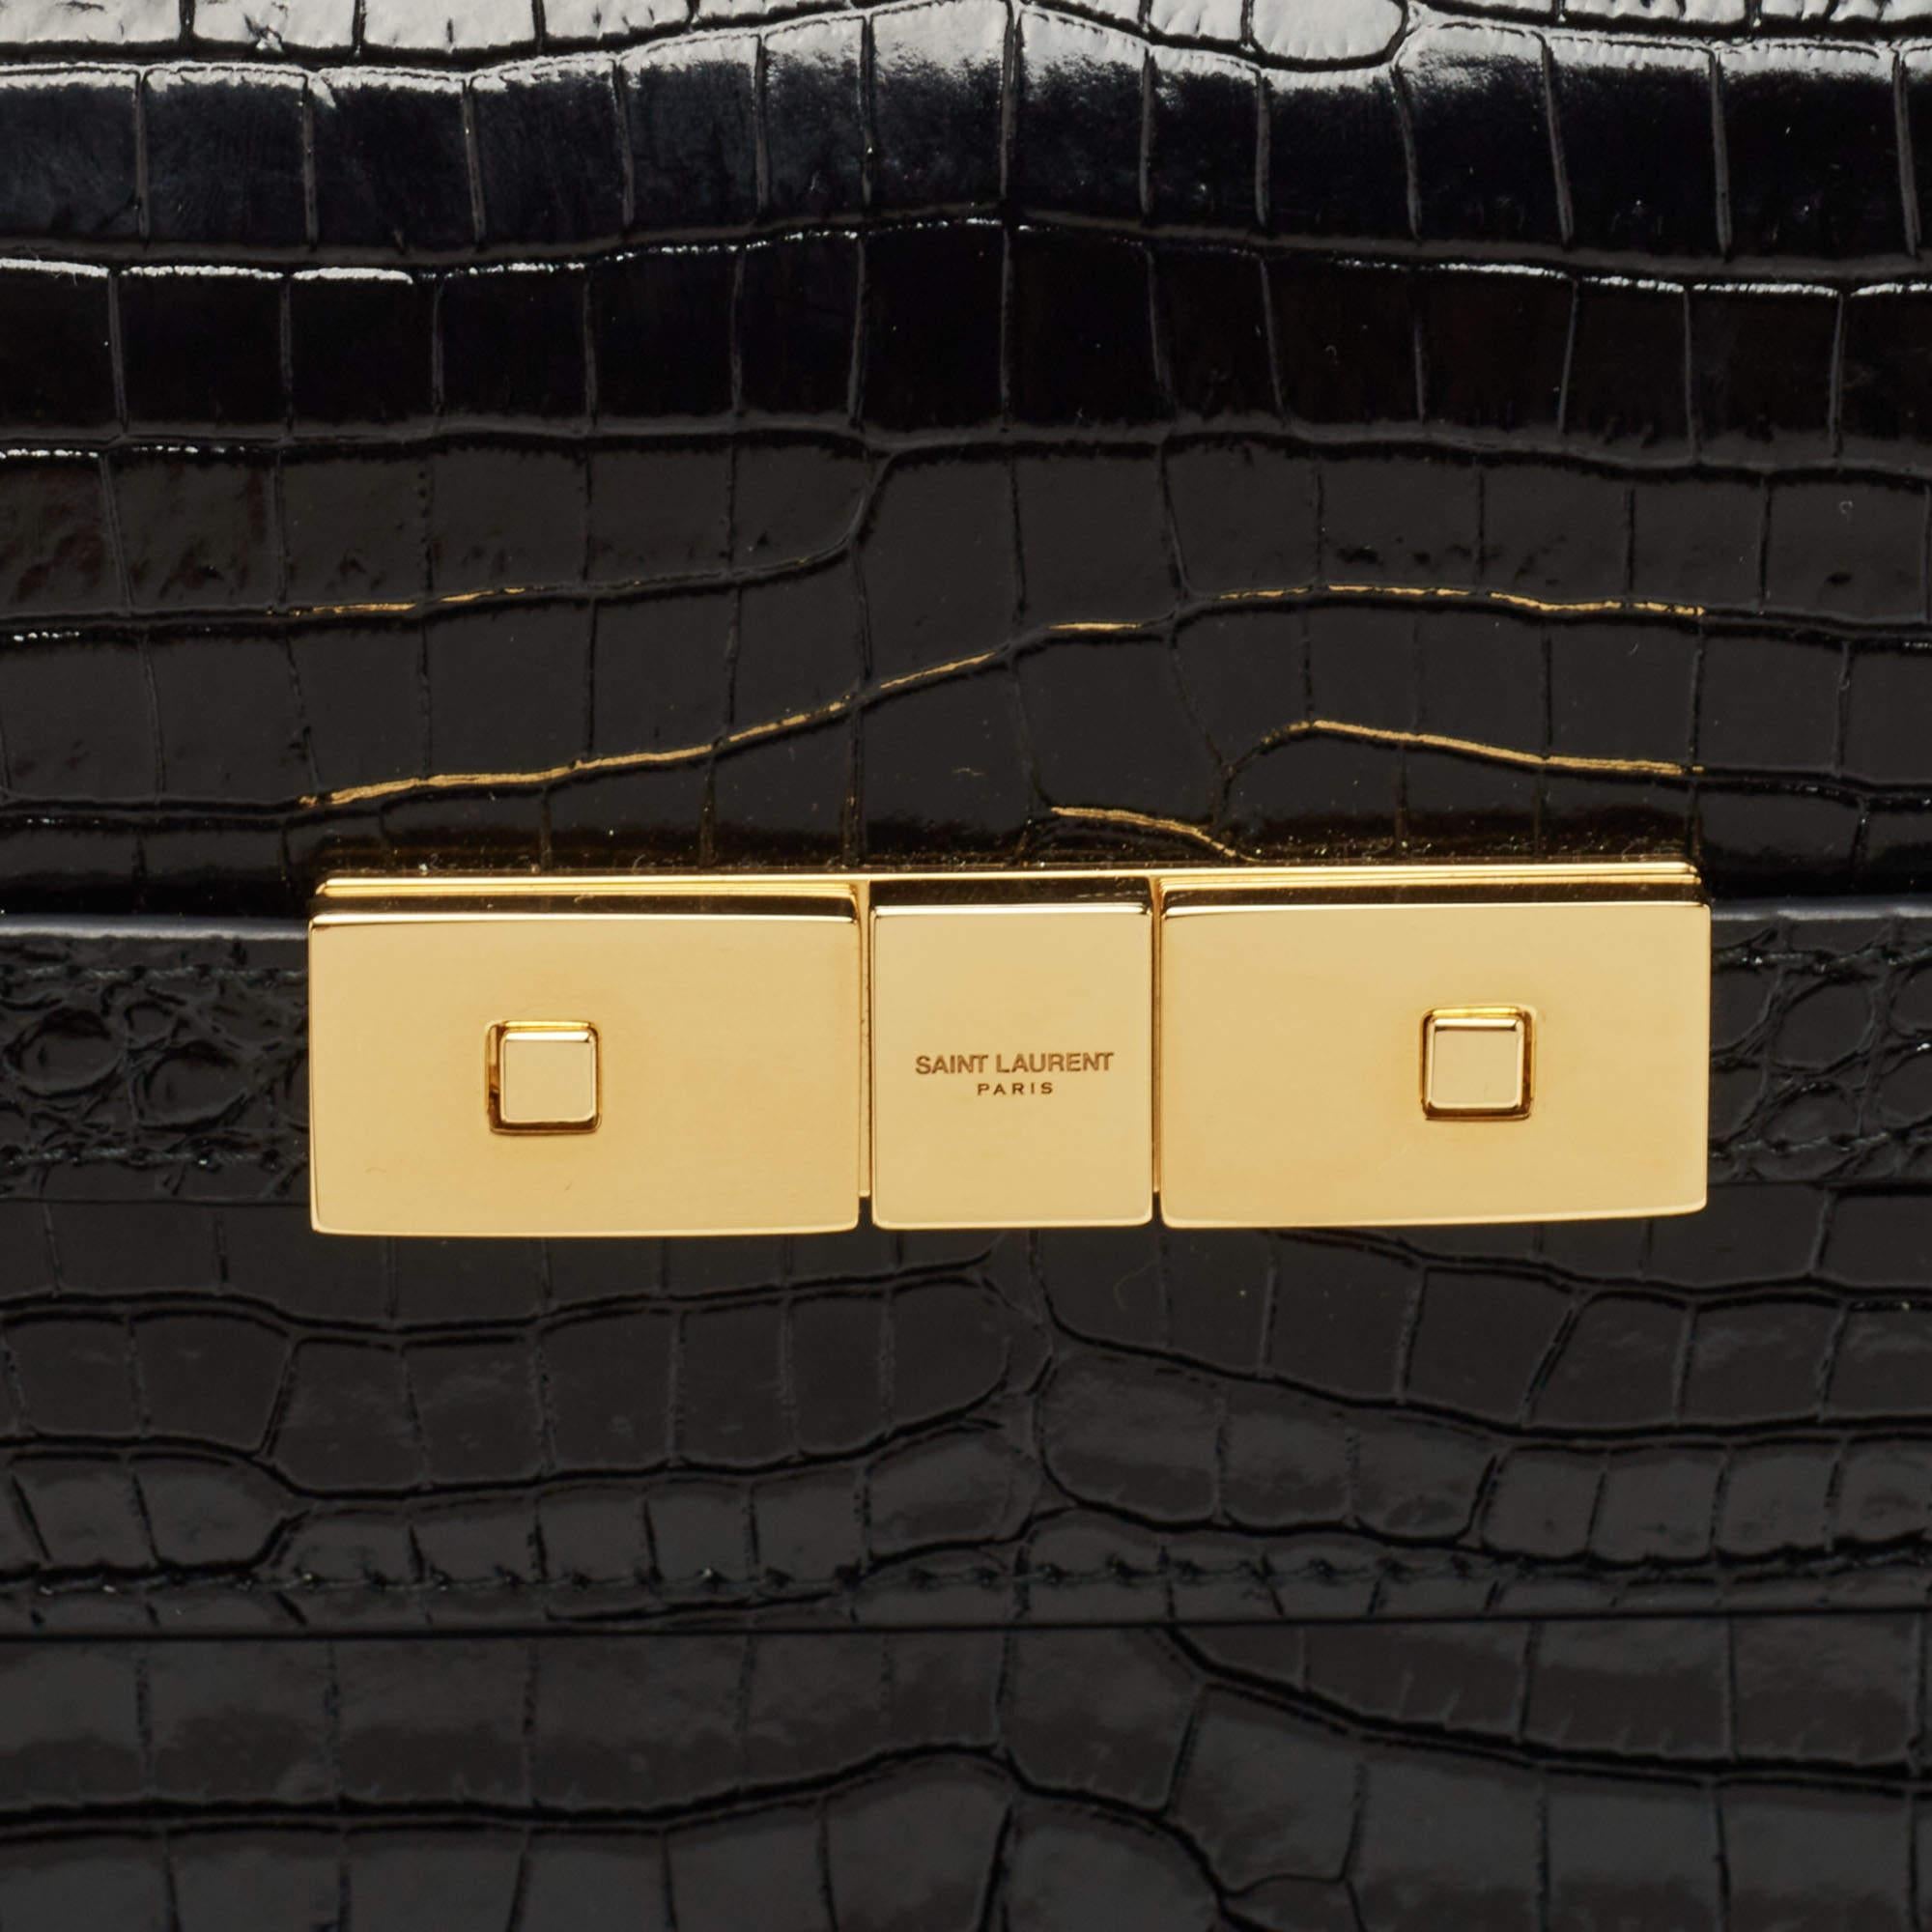 Saint Laurent Black Croc Embossed Leather Manhattan Shoulder Bag 9